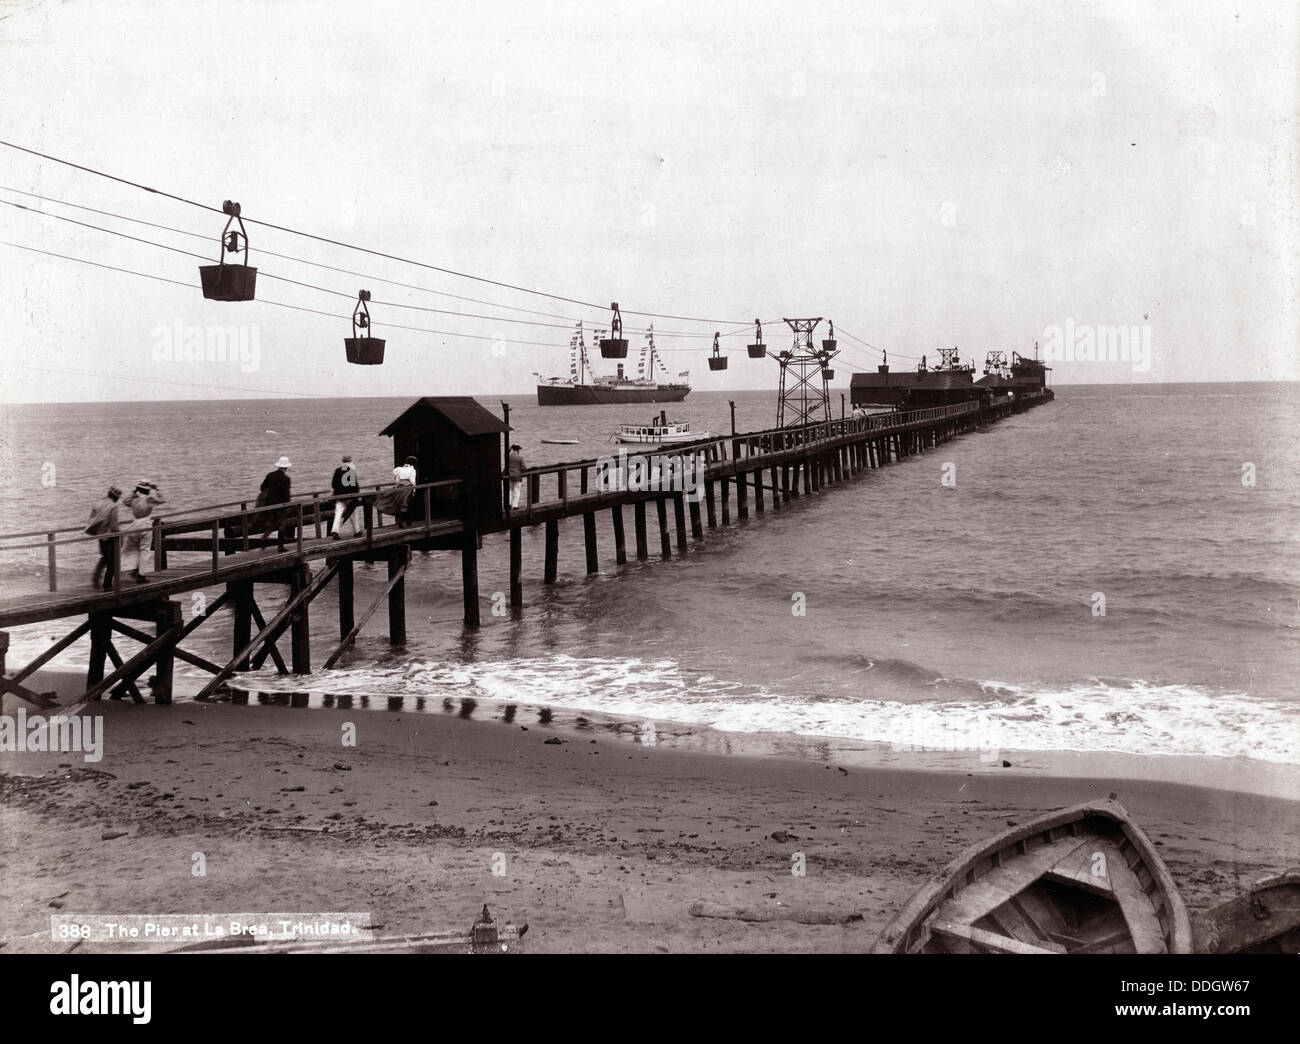 The Pier at La Brea, Trinidad, ca 1898 Stock Photo